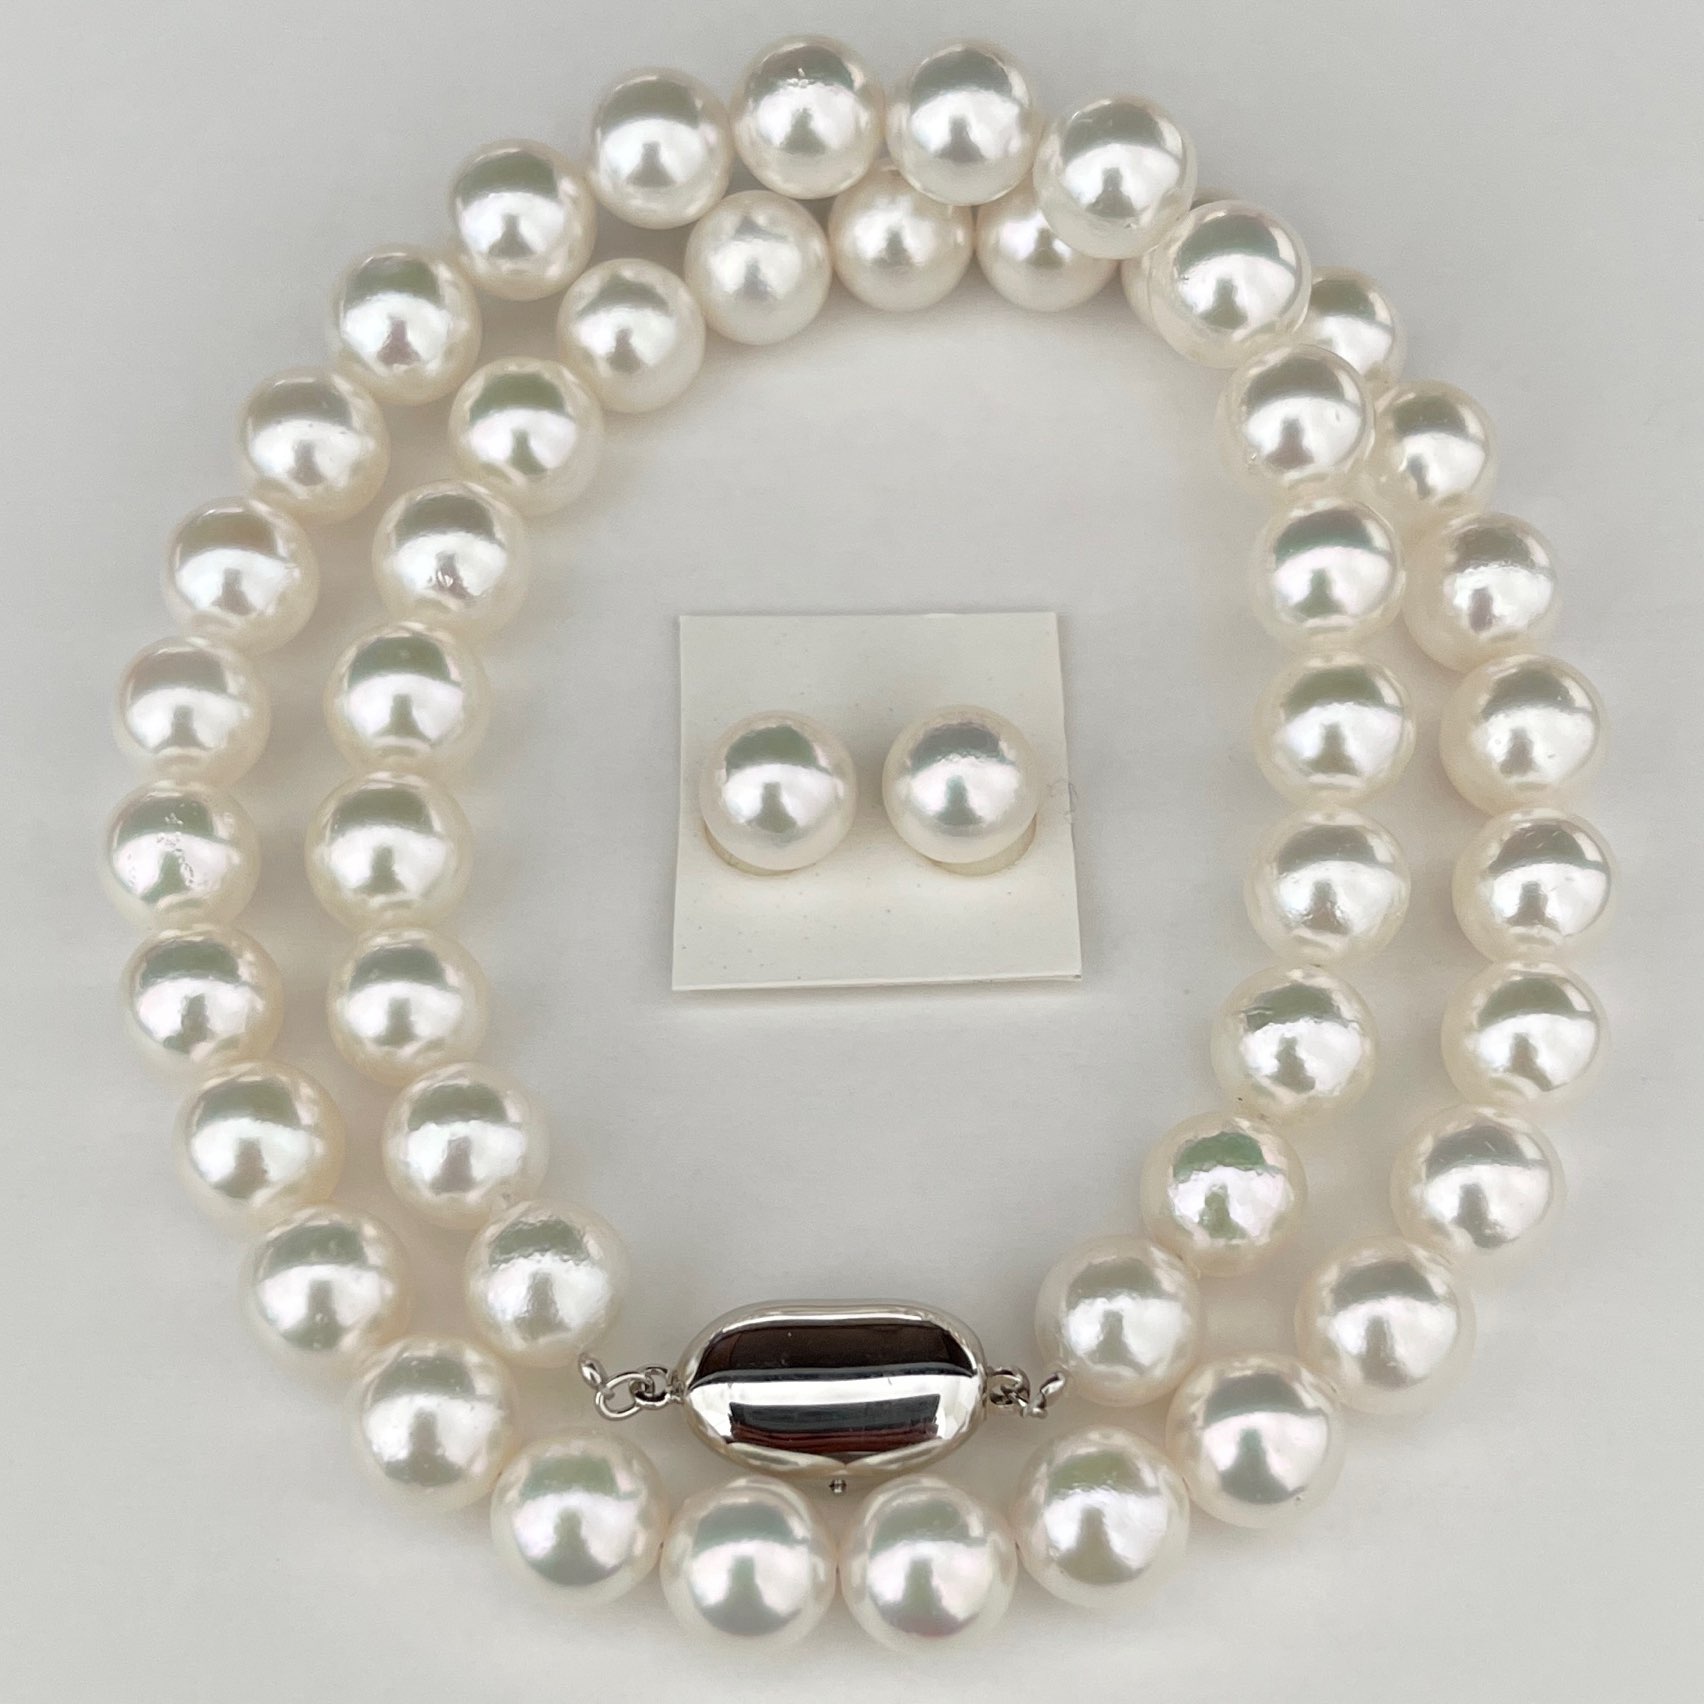 ホワイト系アコヤ本真珠ネックレス8.5-9.0㎜を上から全体を至近距離から見ている